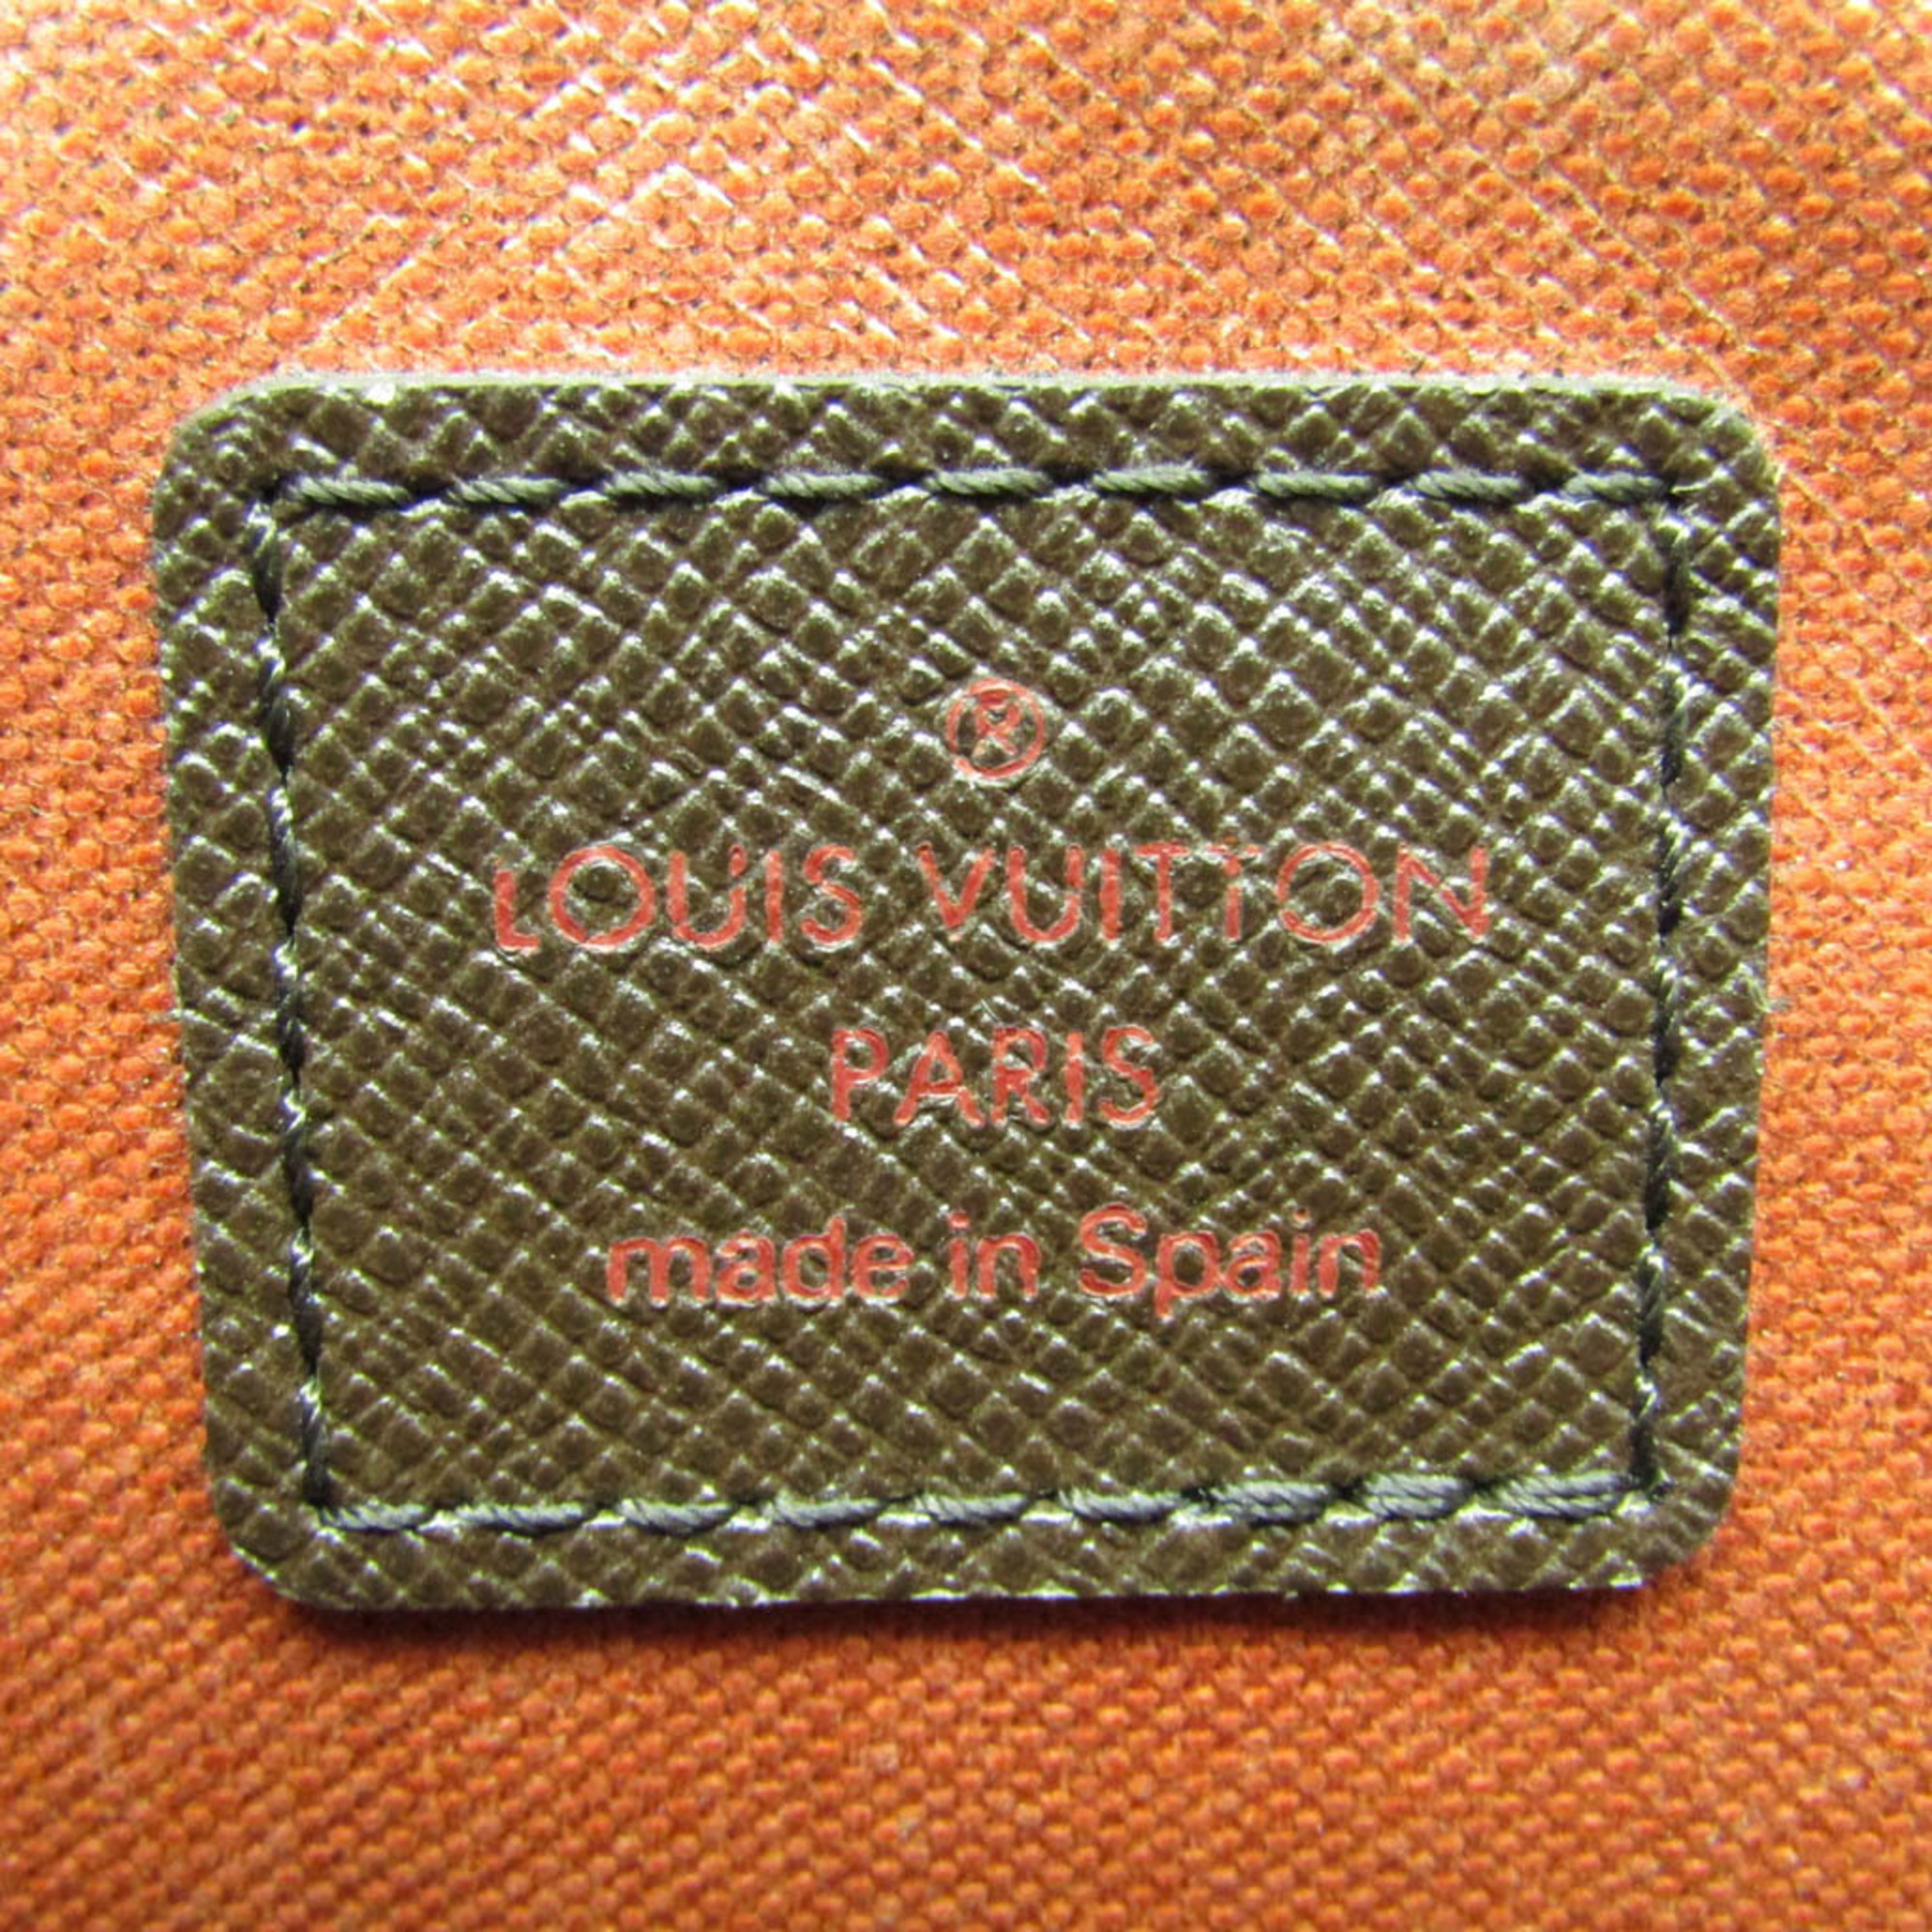 ルイ・ヴィトン(Louis Vuitton) ダミエ トゥルース・トワレット N47623 レディース ポーチ エベヌ